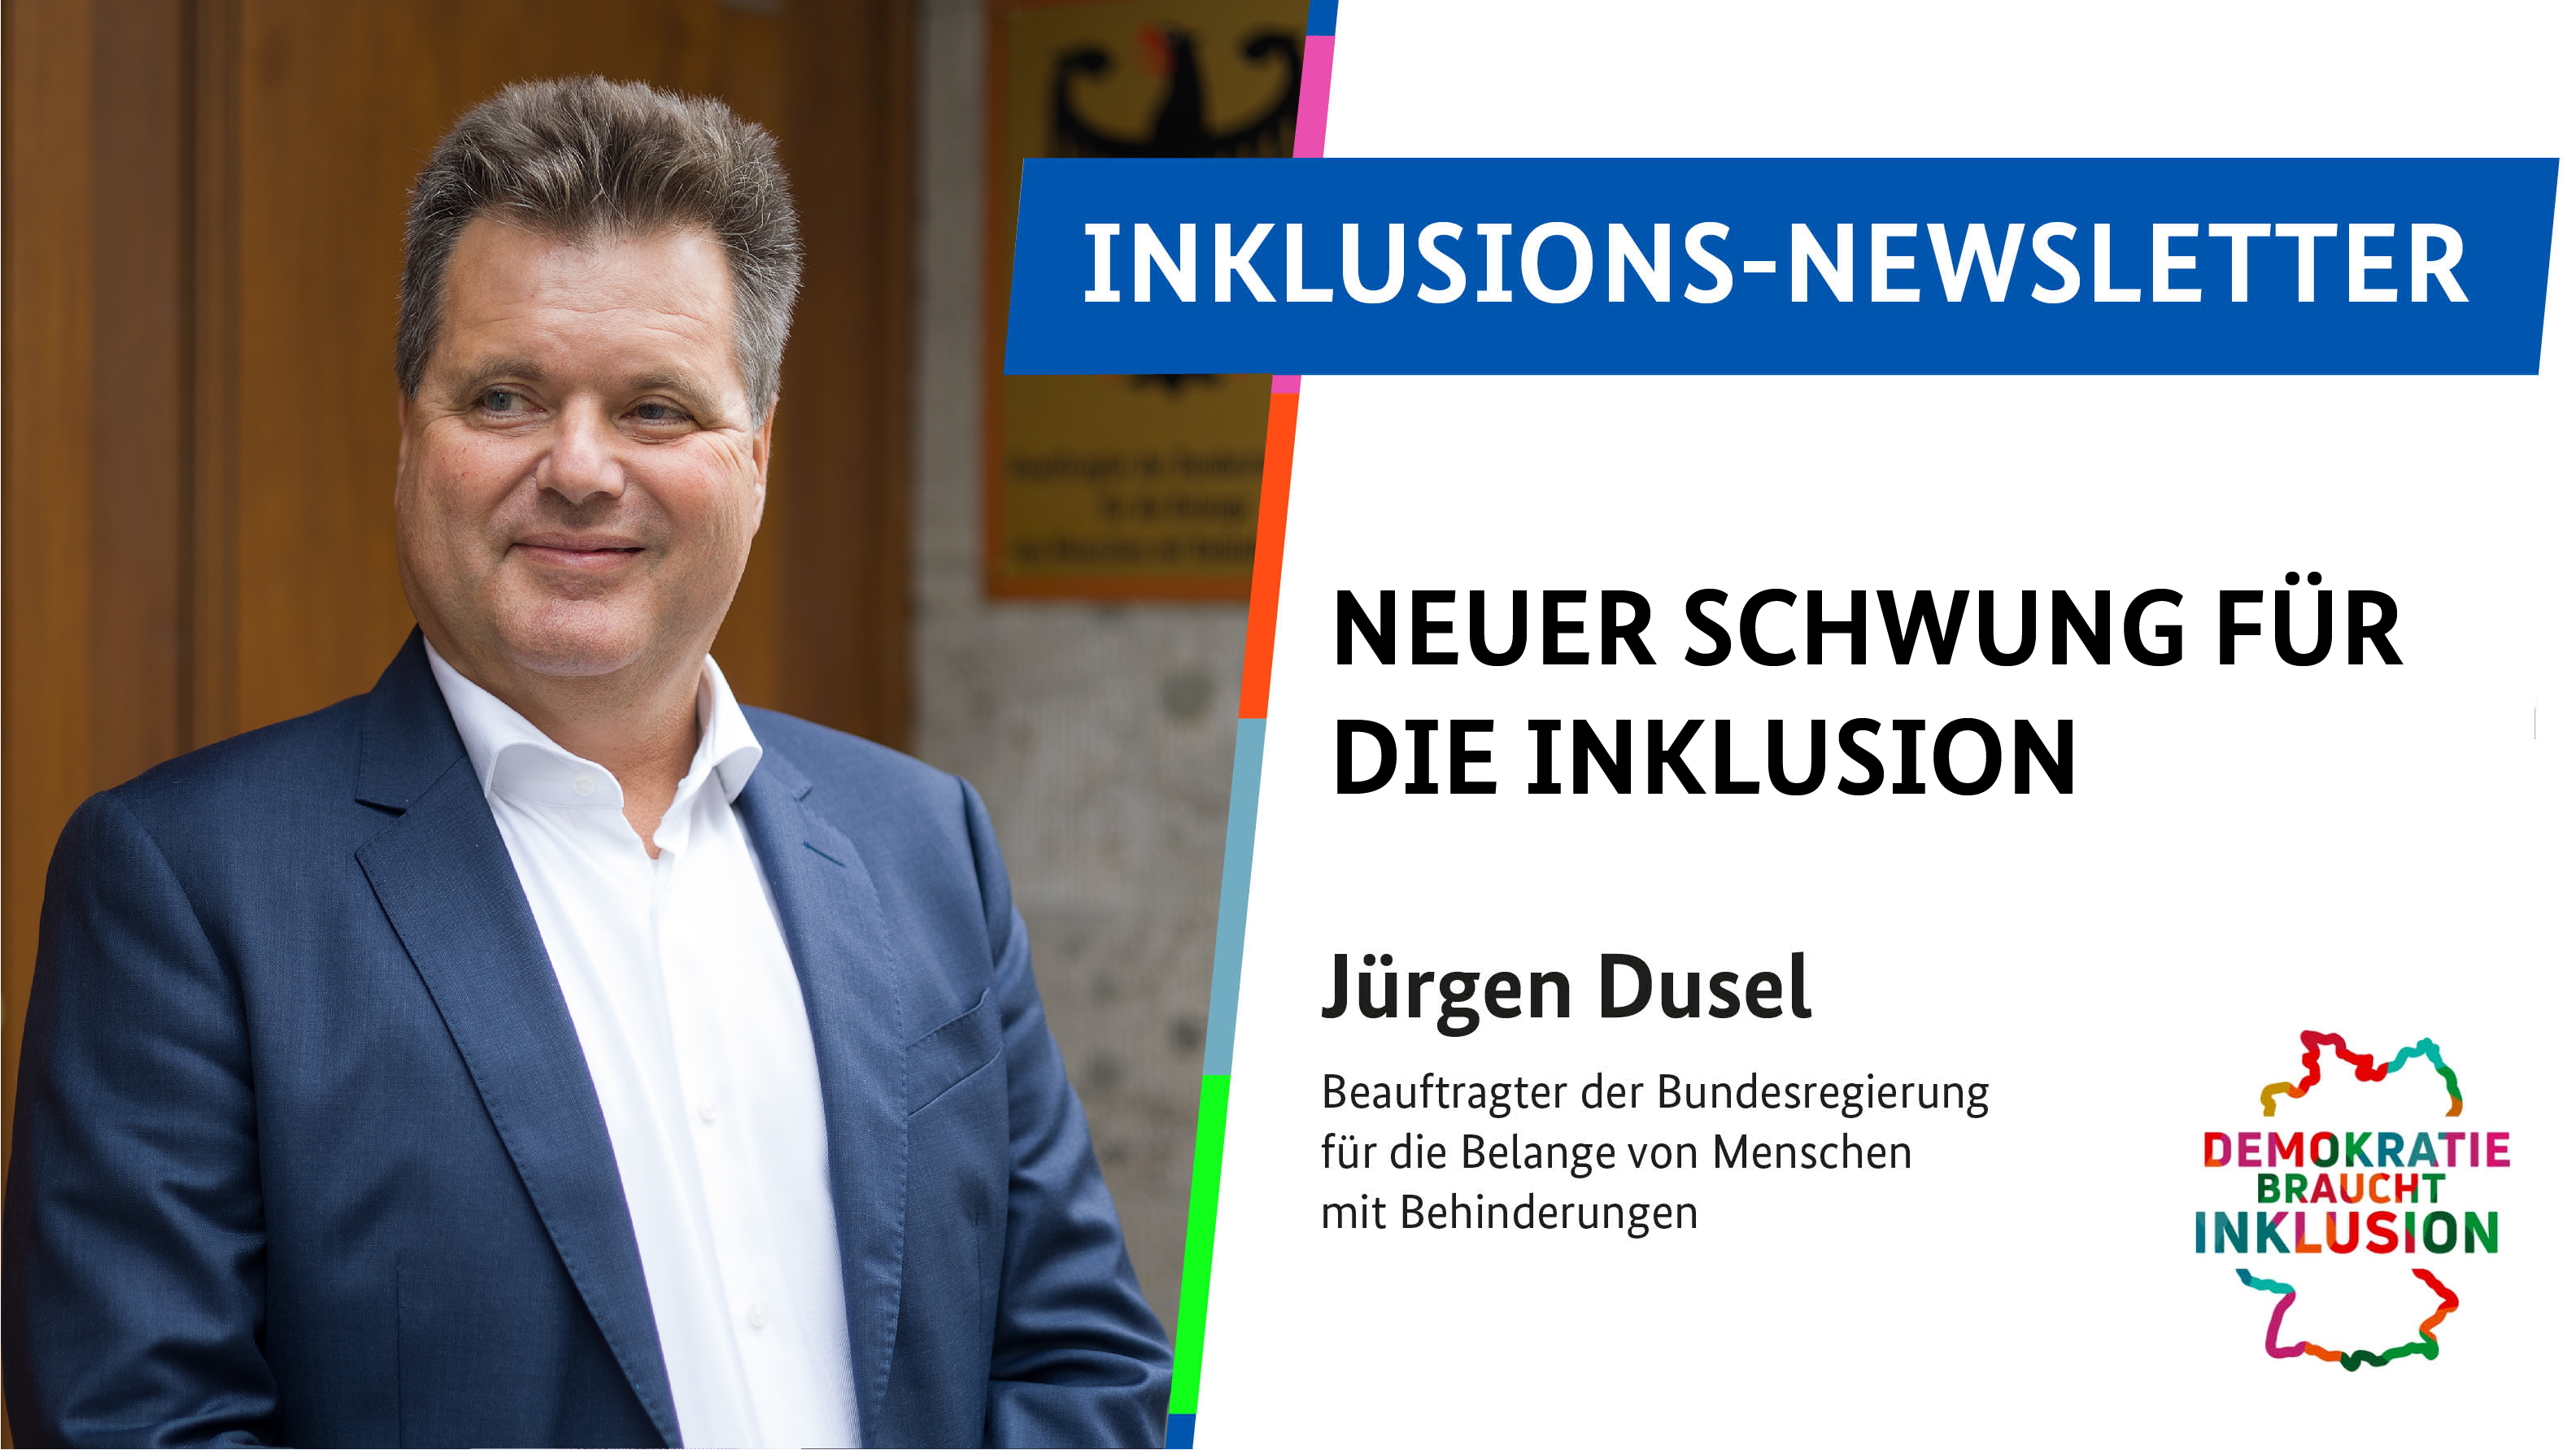 Bild-Text-Kachel: Links ein Portrait von Jürgen Dusel, rechts daneben der Text in Großbuchstaben: Inklusions-Newsletter Neuer Schwung für die Inklusion